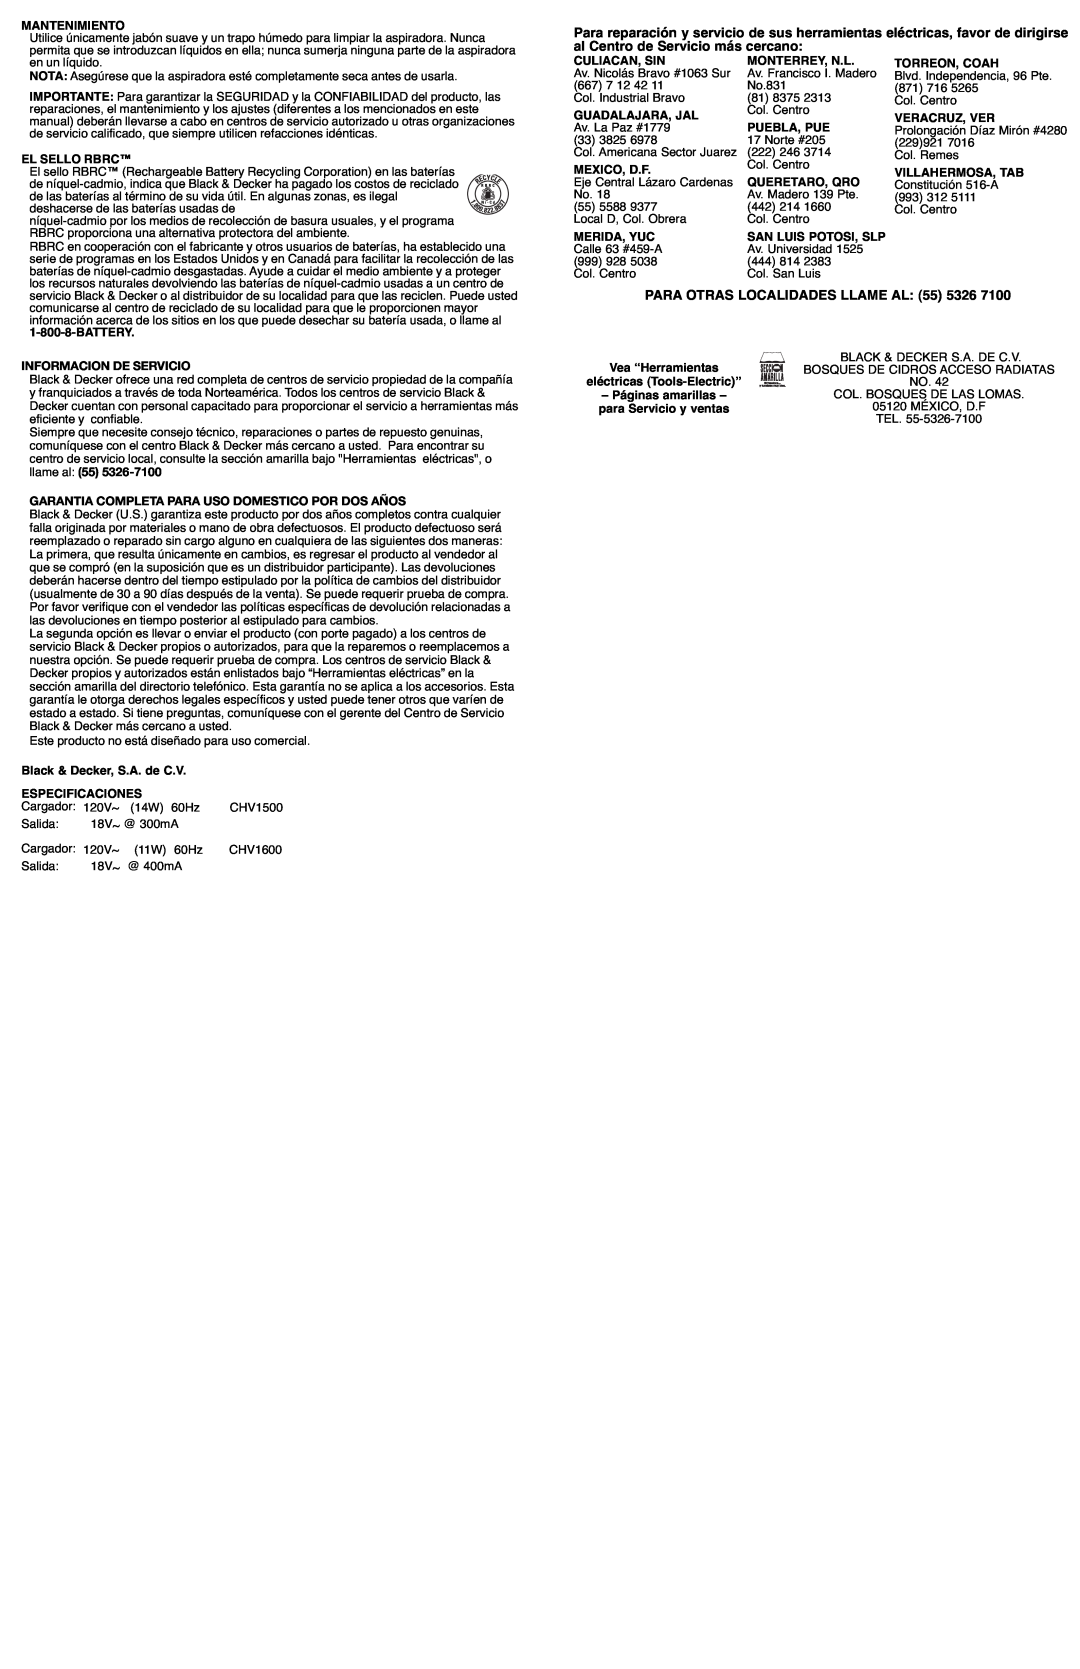 Black & Decker 598531-00, CHV1600 Informacion De Servicio, Garantia Completa Para Uso Domestico Por Dos Años 